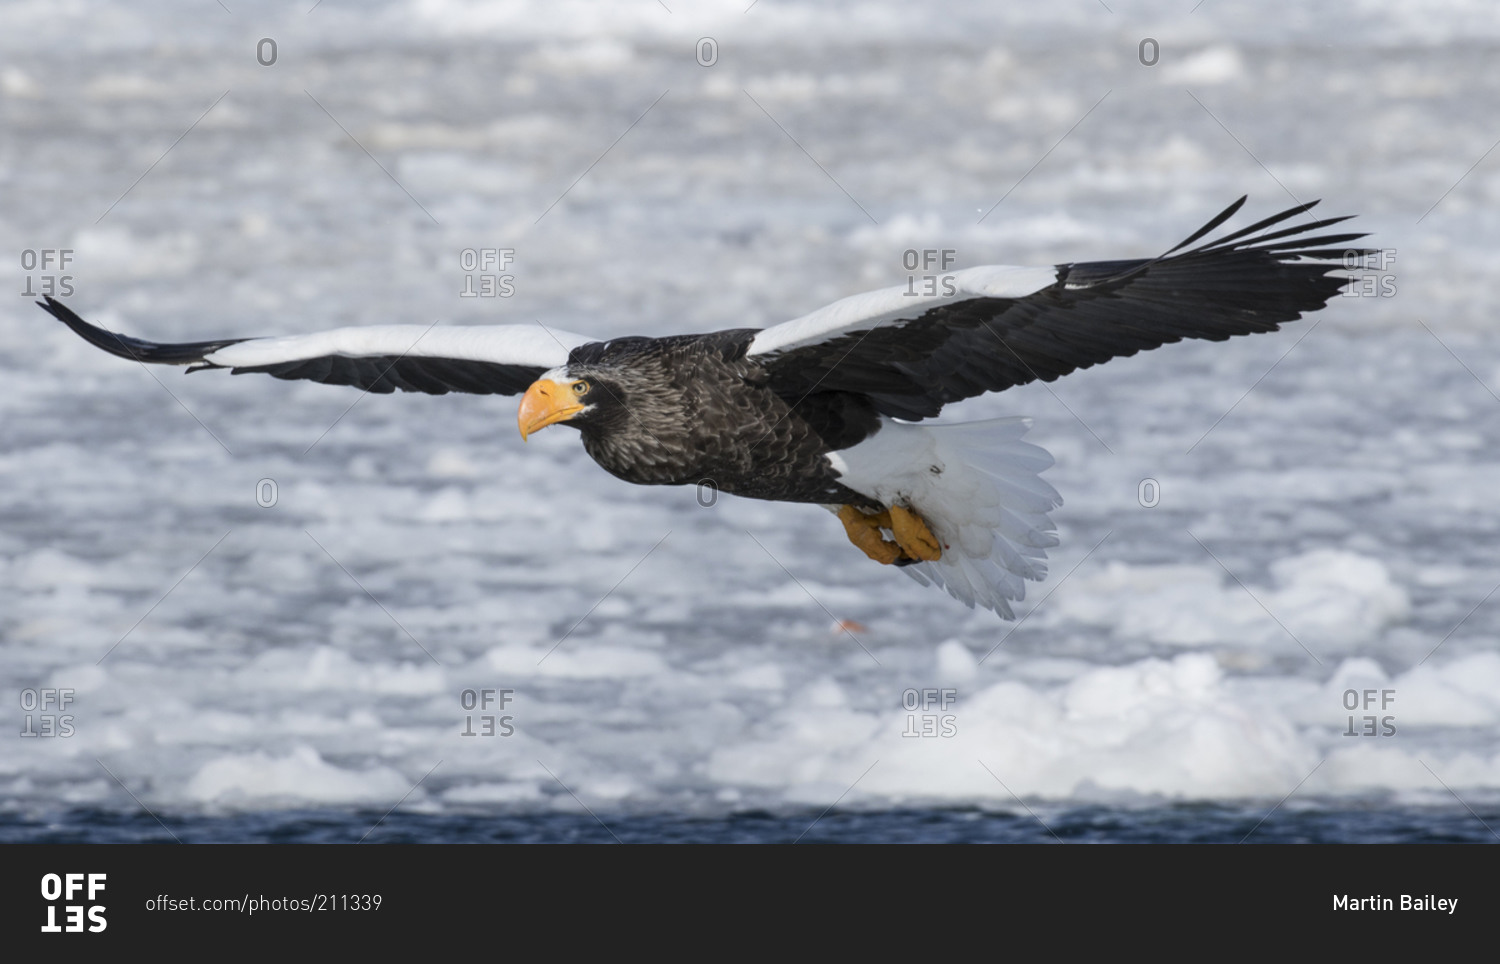 Steller's sea eagle flying over ocean